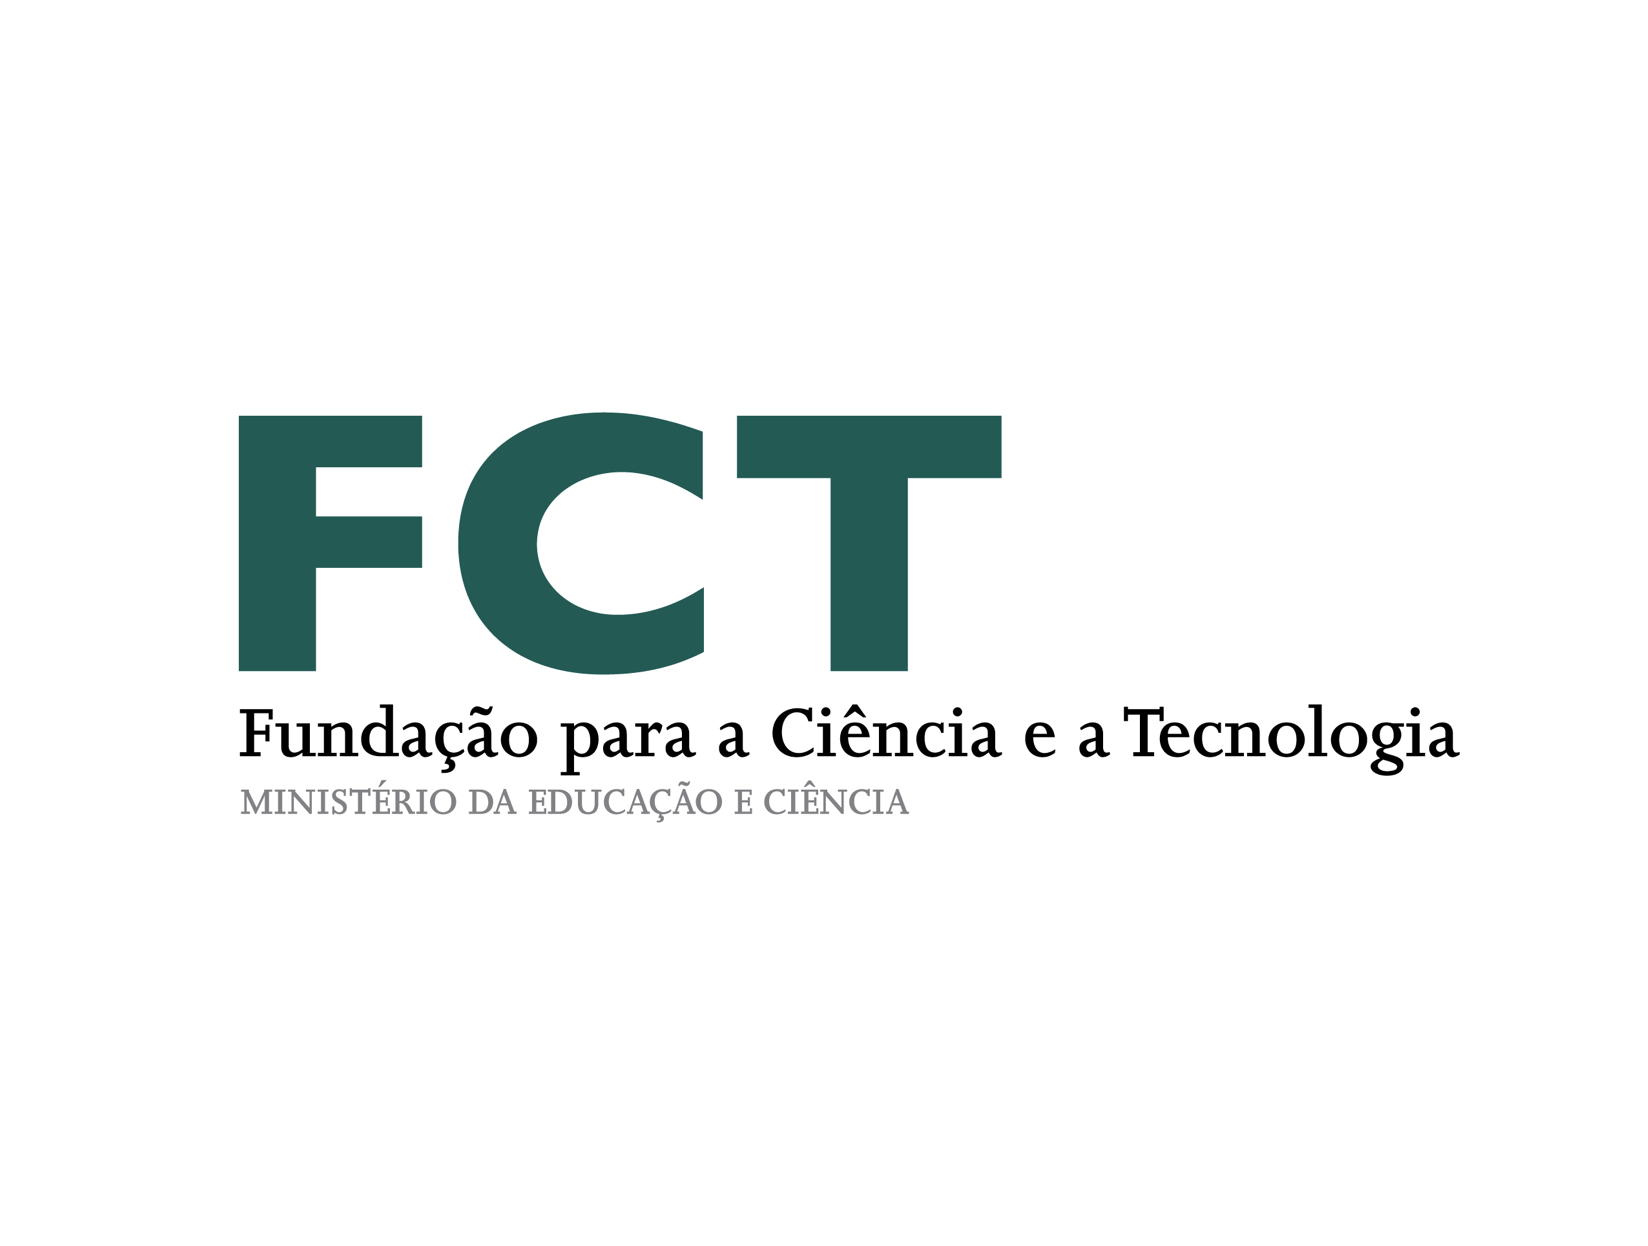 FCT_fundacao